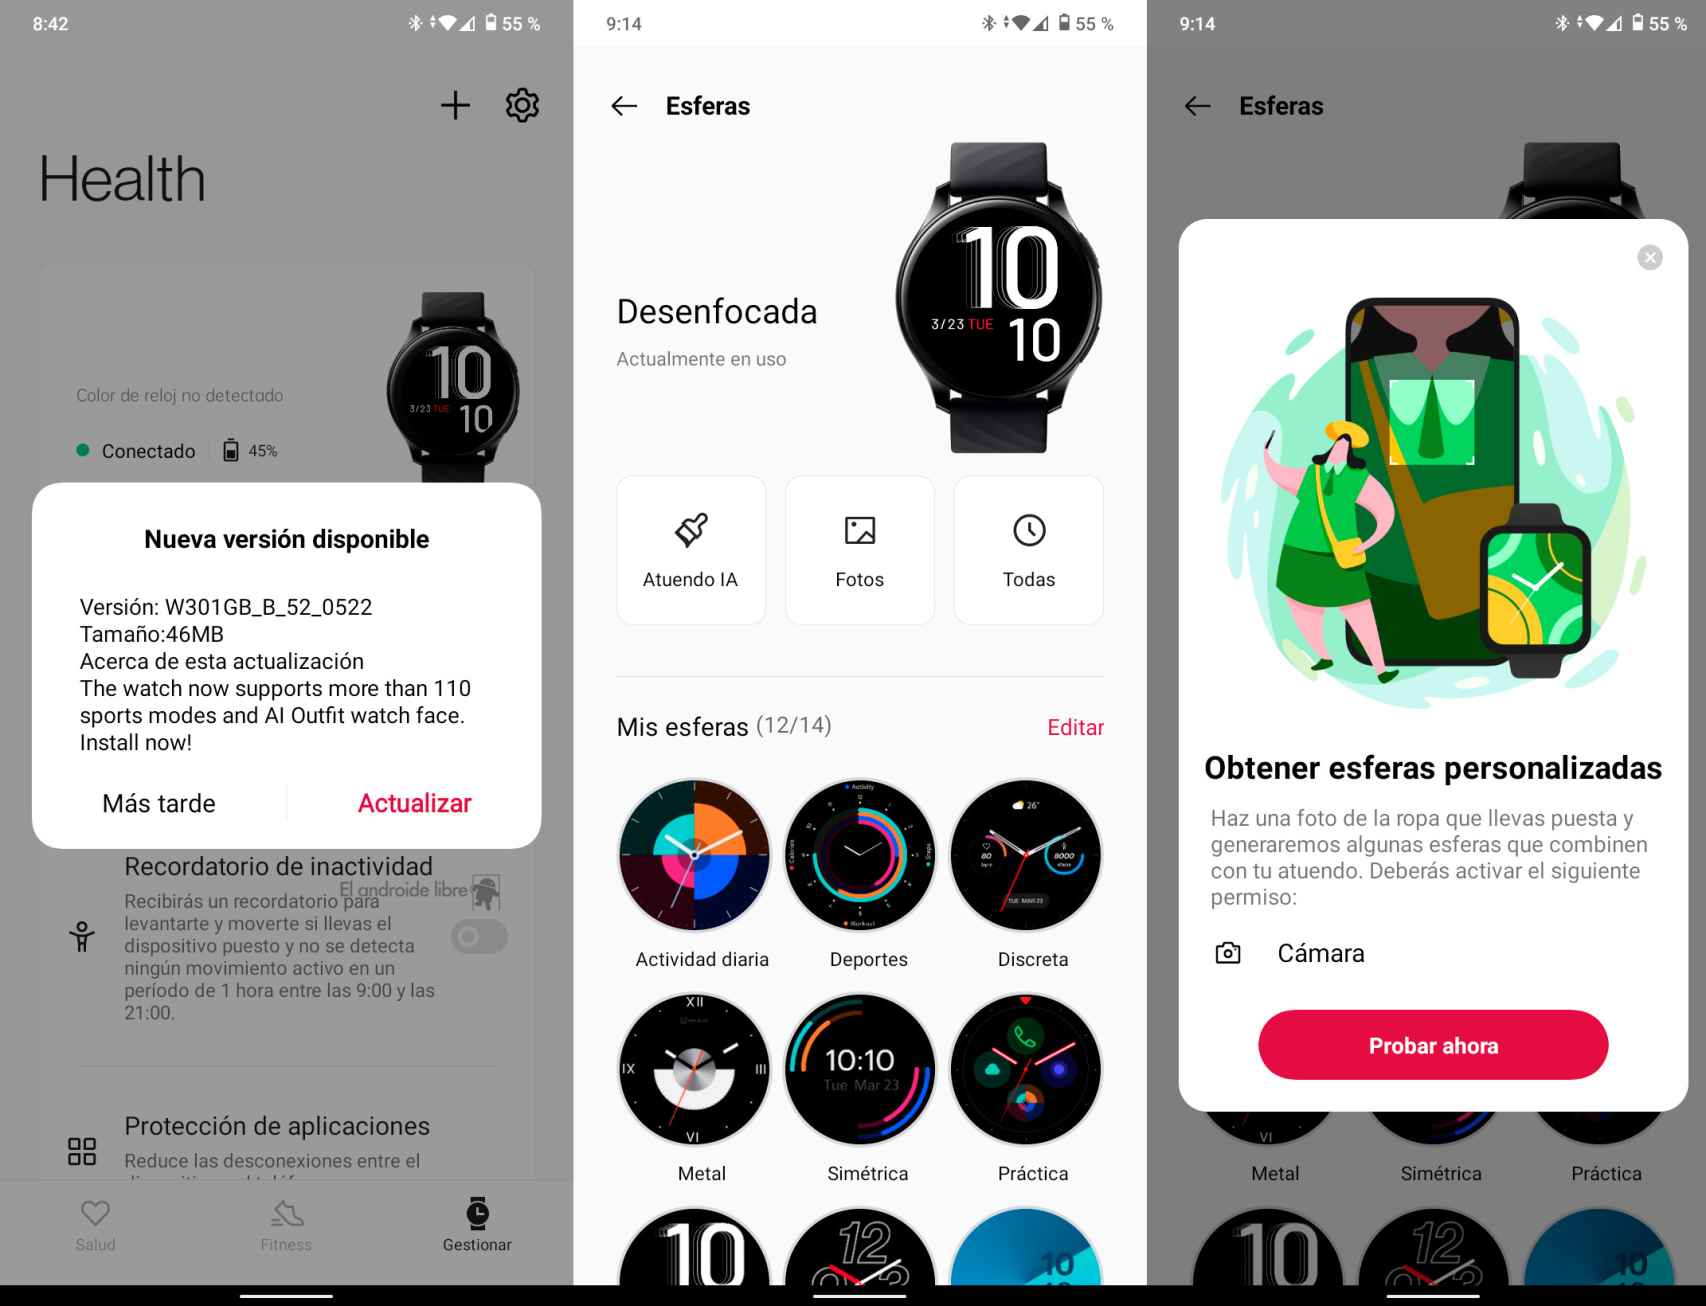 Interfaz de la app OnePlus Health